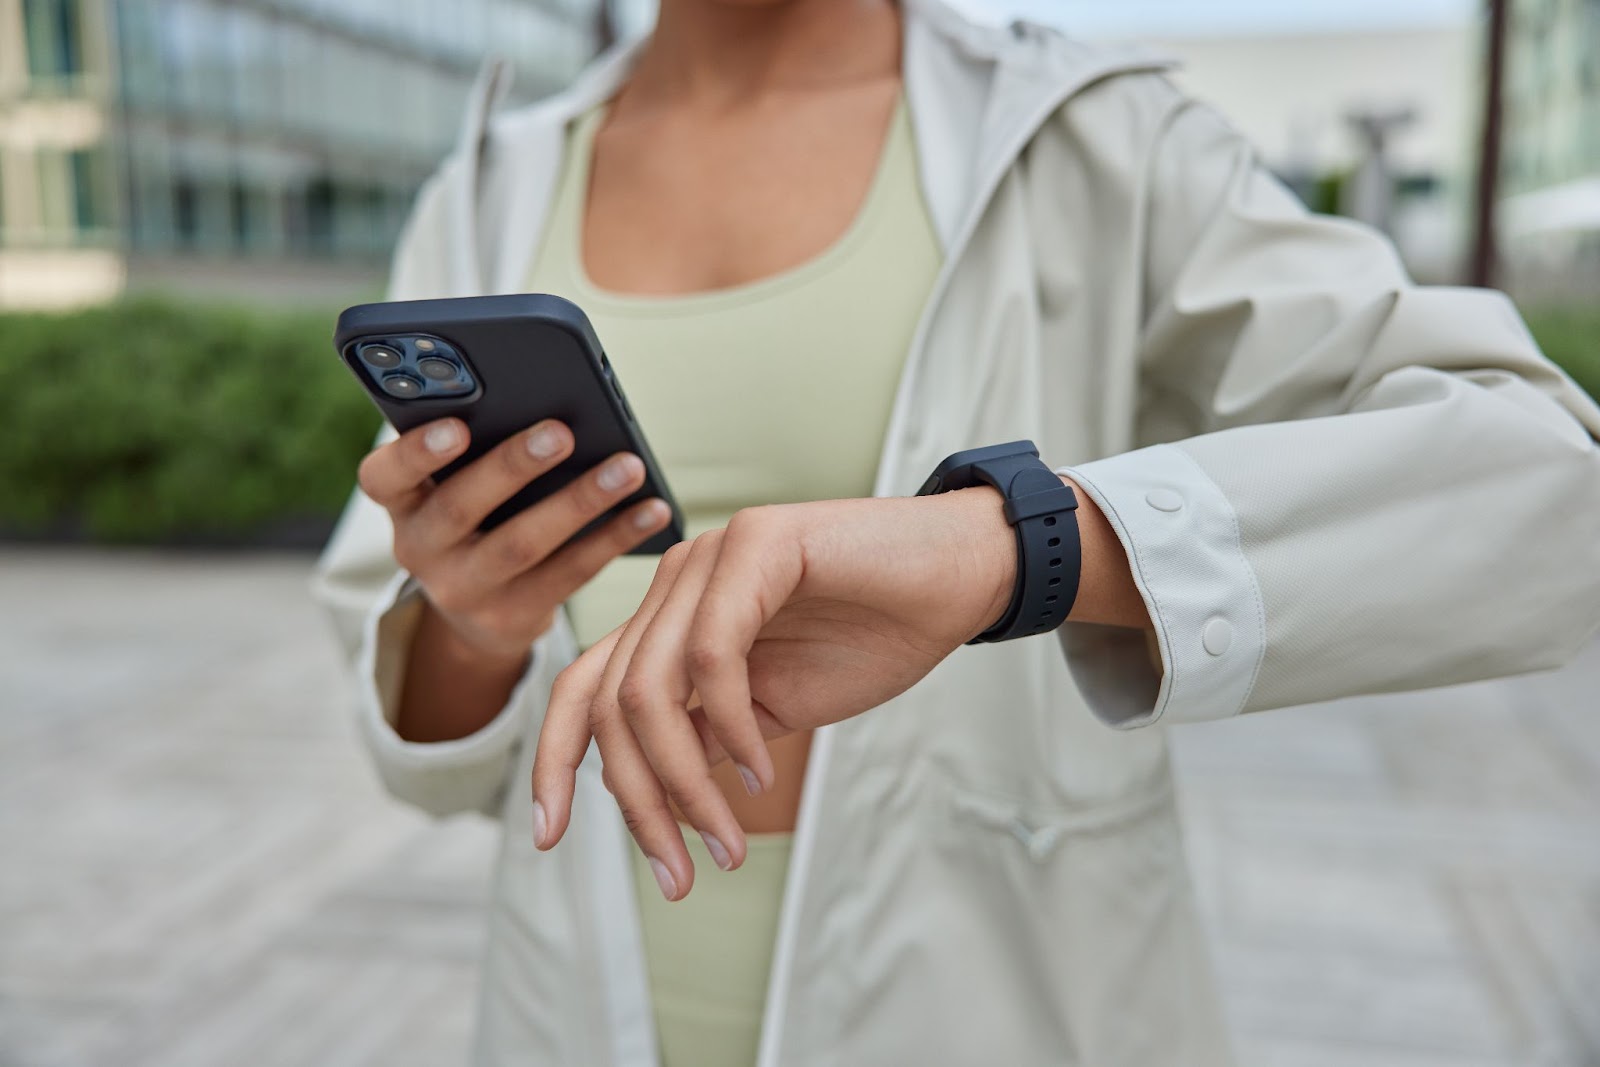 Cinci dintre numeroasele lucruri pe care le poți face cu un smartwatch